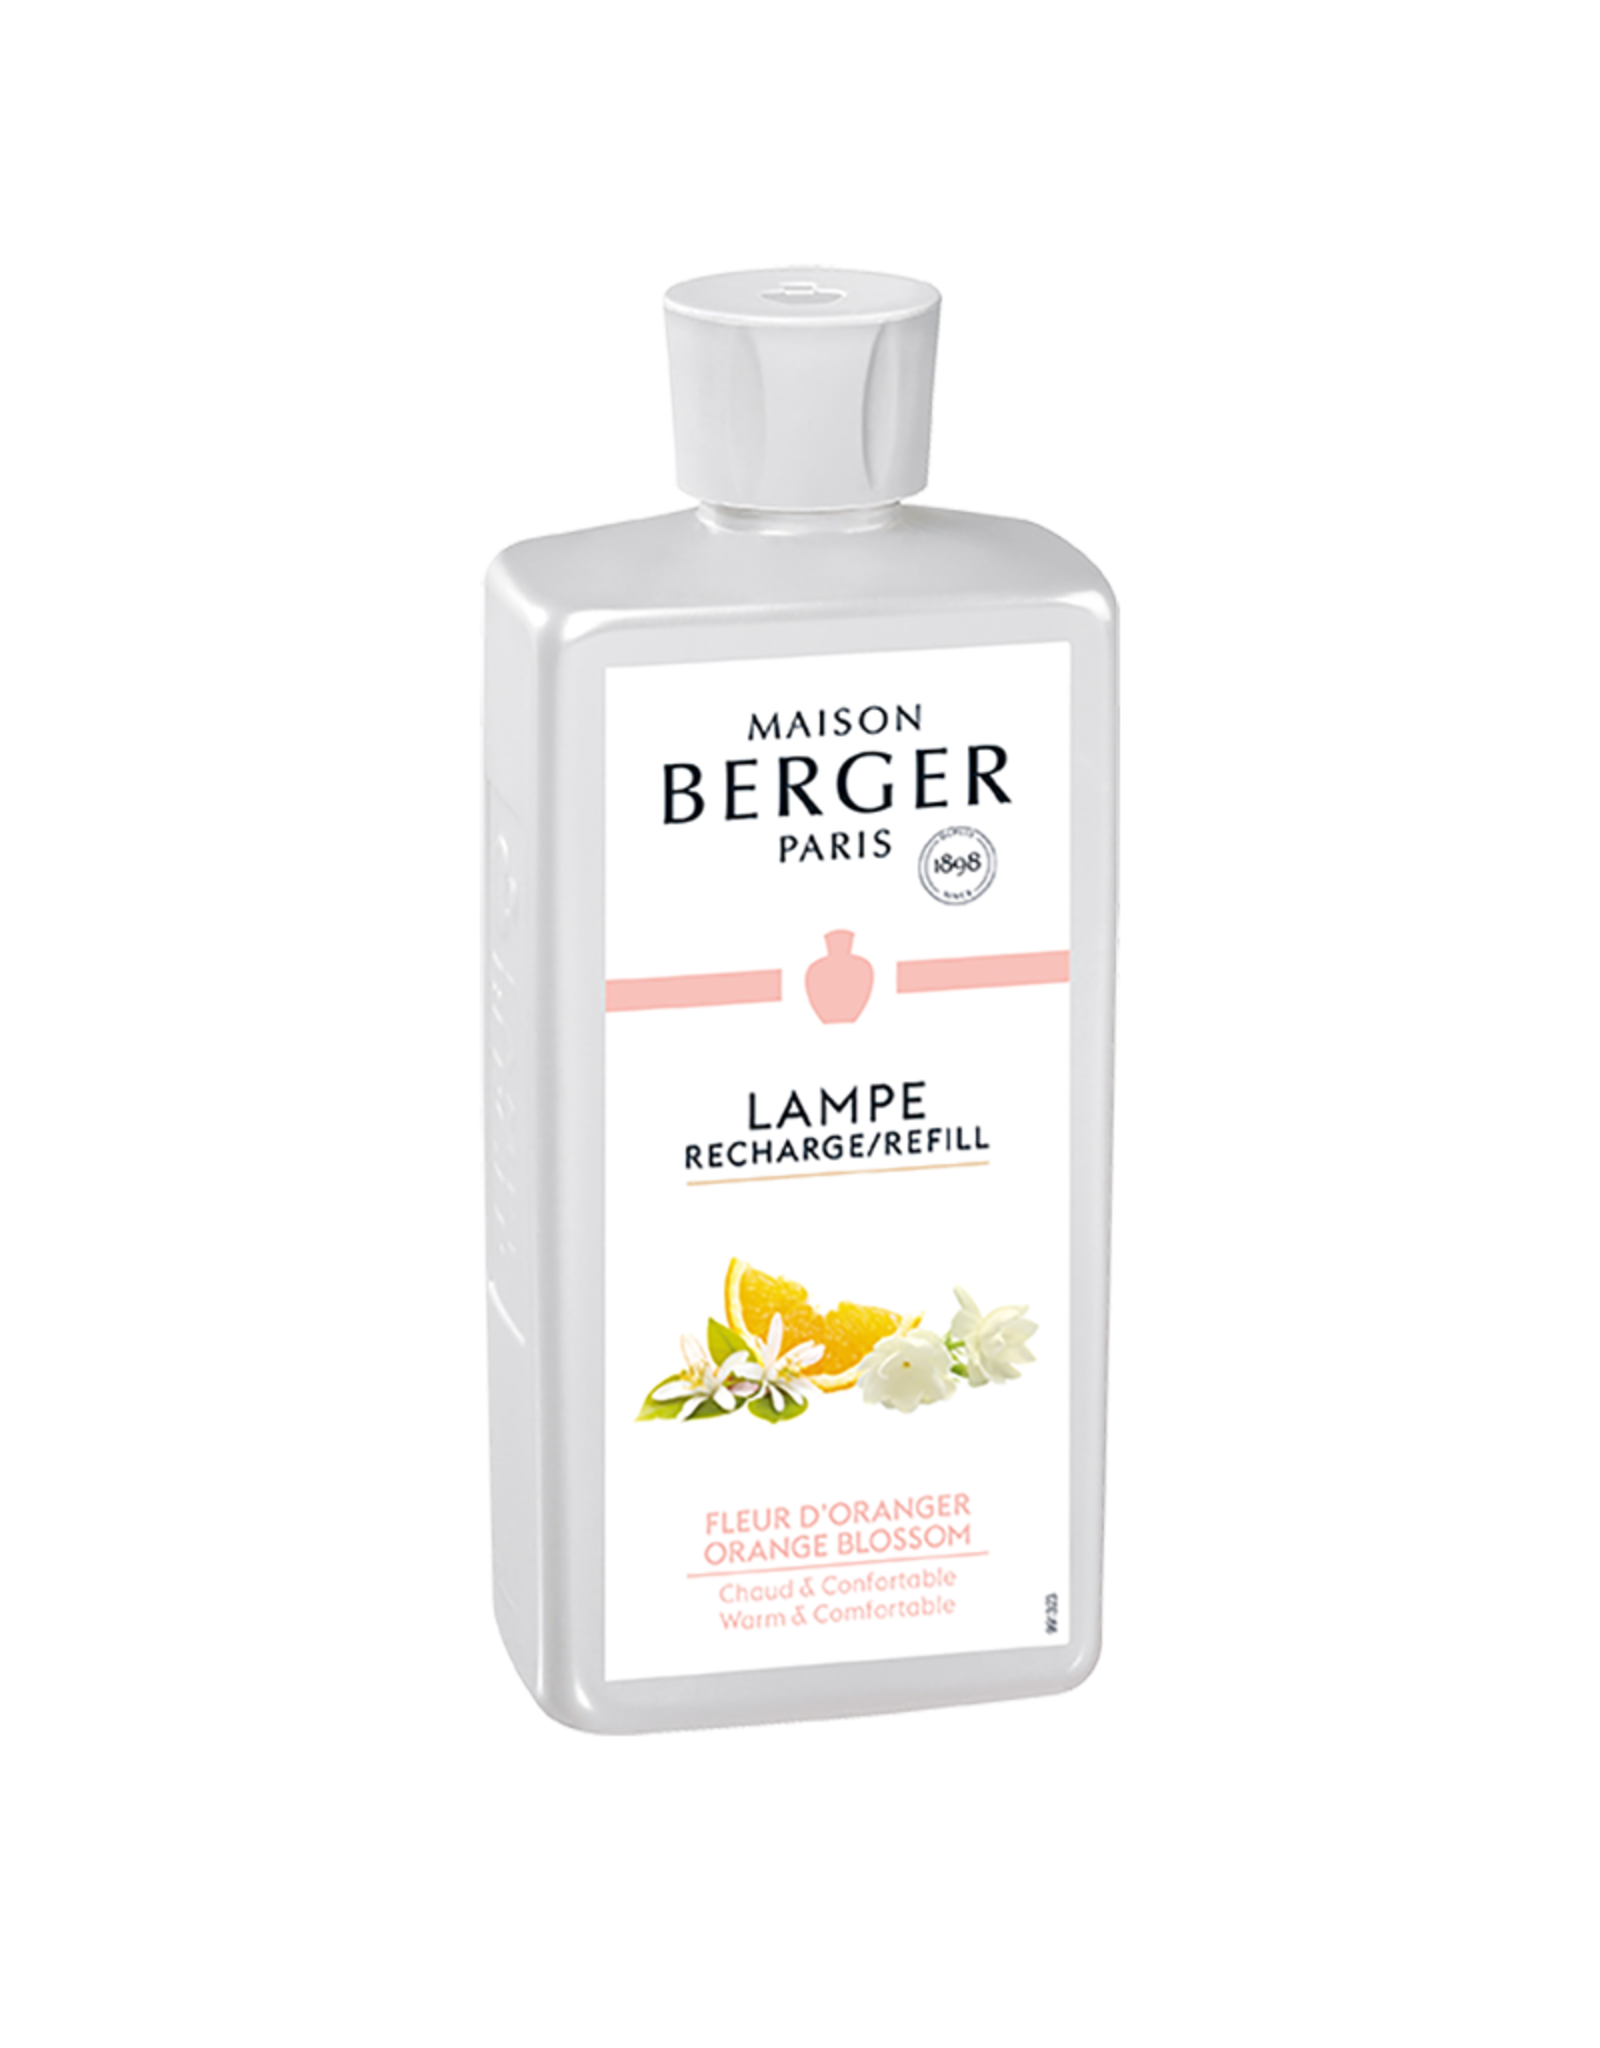 Lampe Berger Oil Liquid Fragrance 500ml Orange Blossom Maison Berger